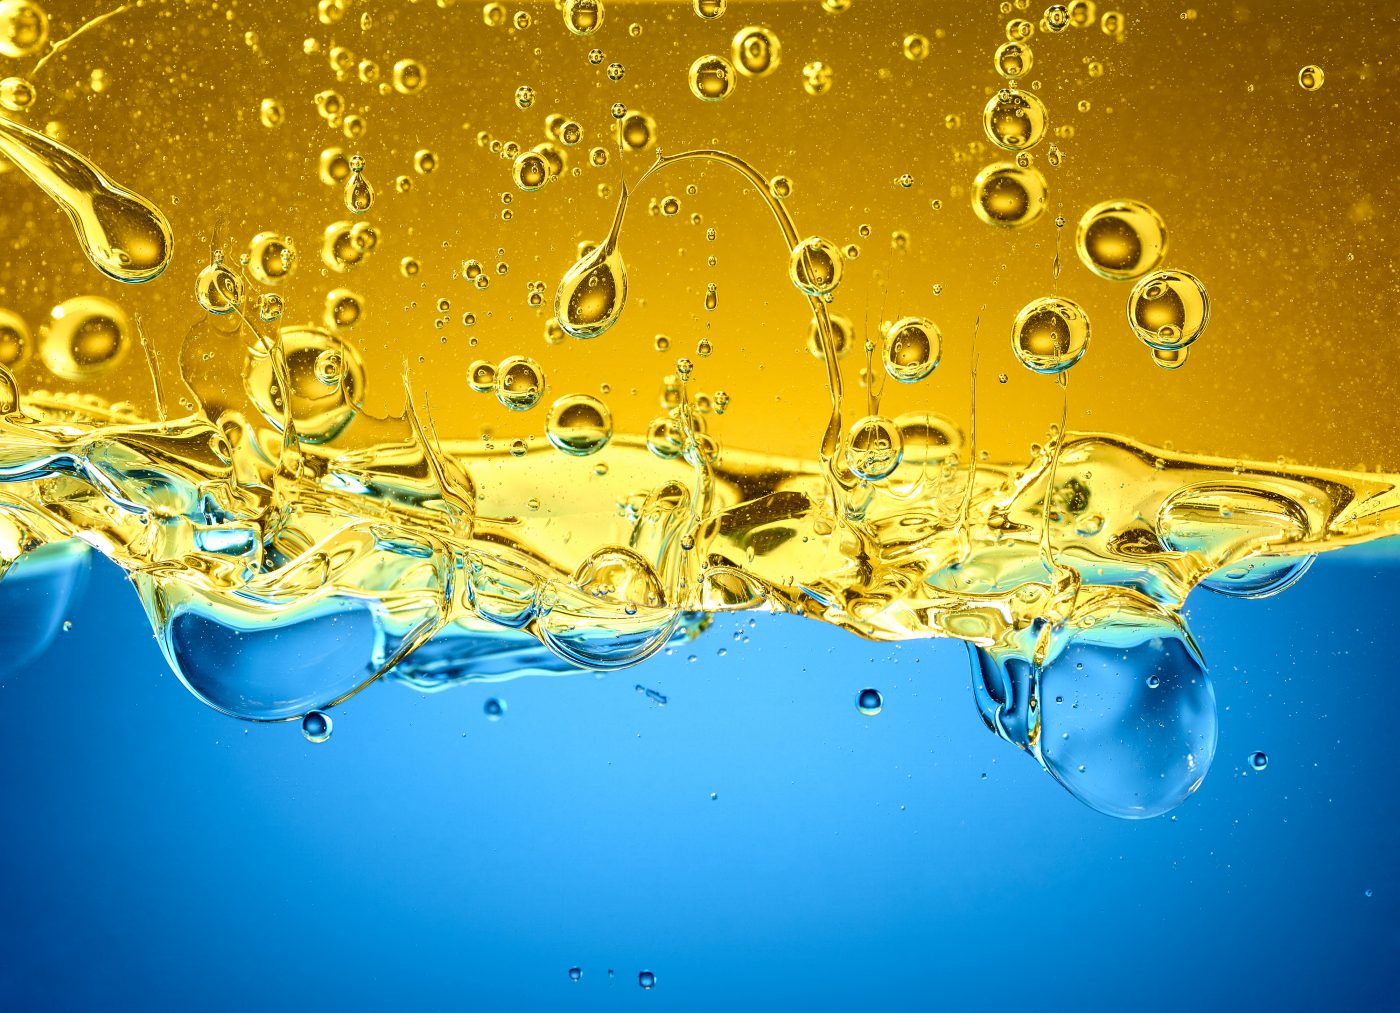 liquids gelbe und blaue flüssigkeiten treffen mit hoher geschwindigkeit aufeinender und vermischen sich zu abstakten gebilden. Querformat, Landscape